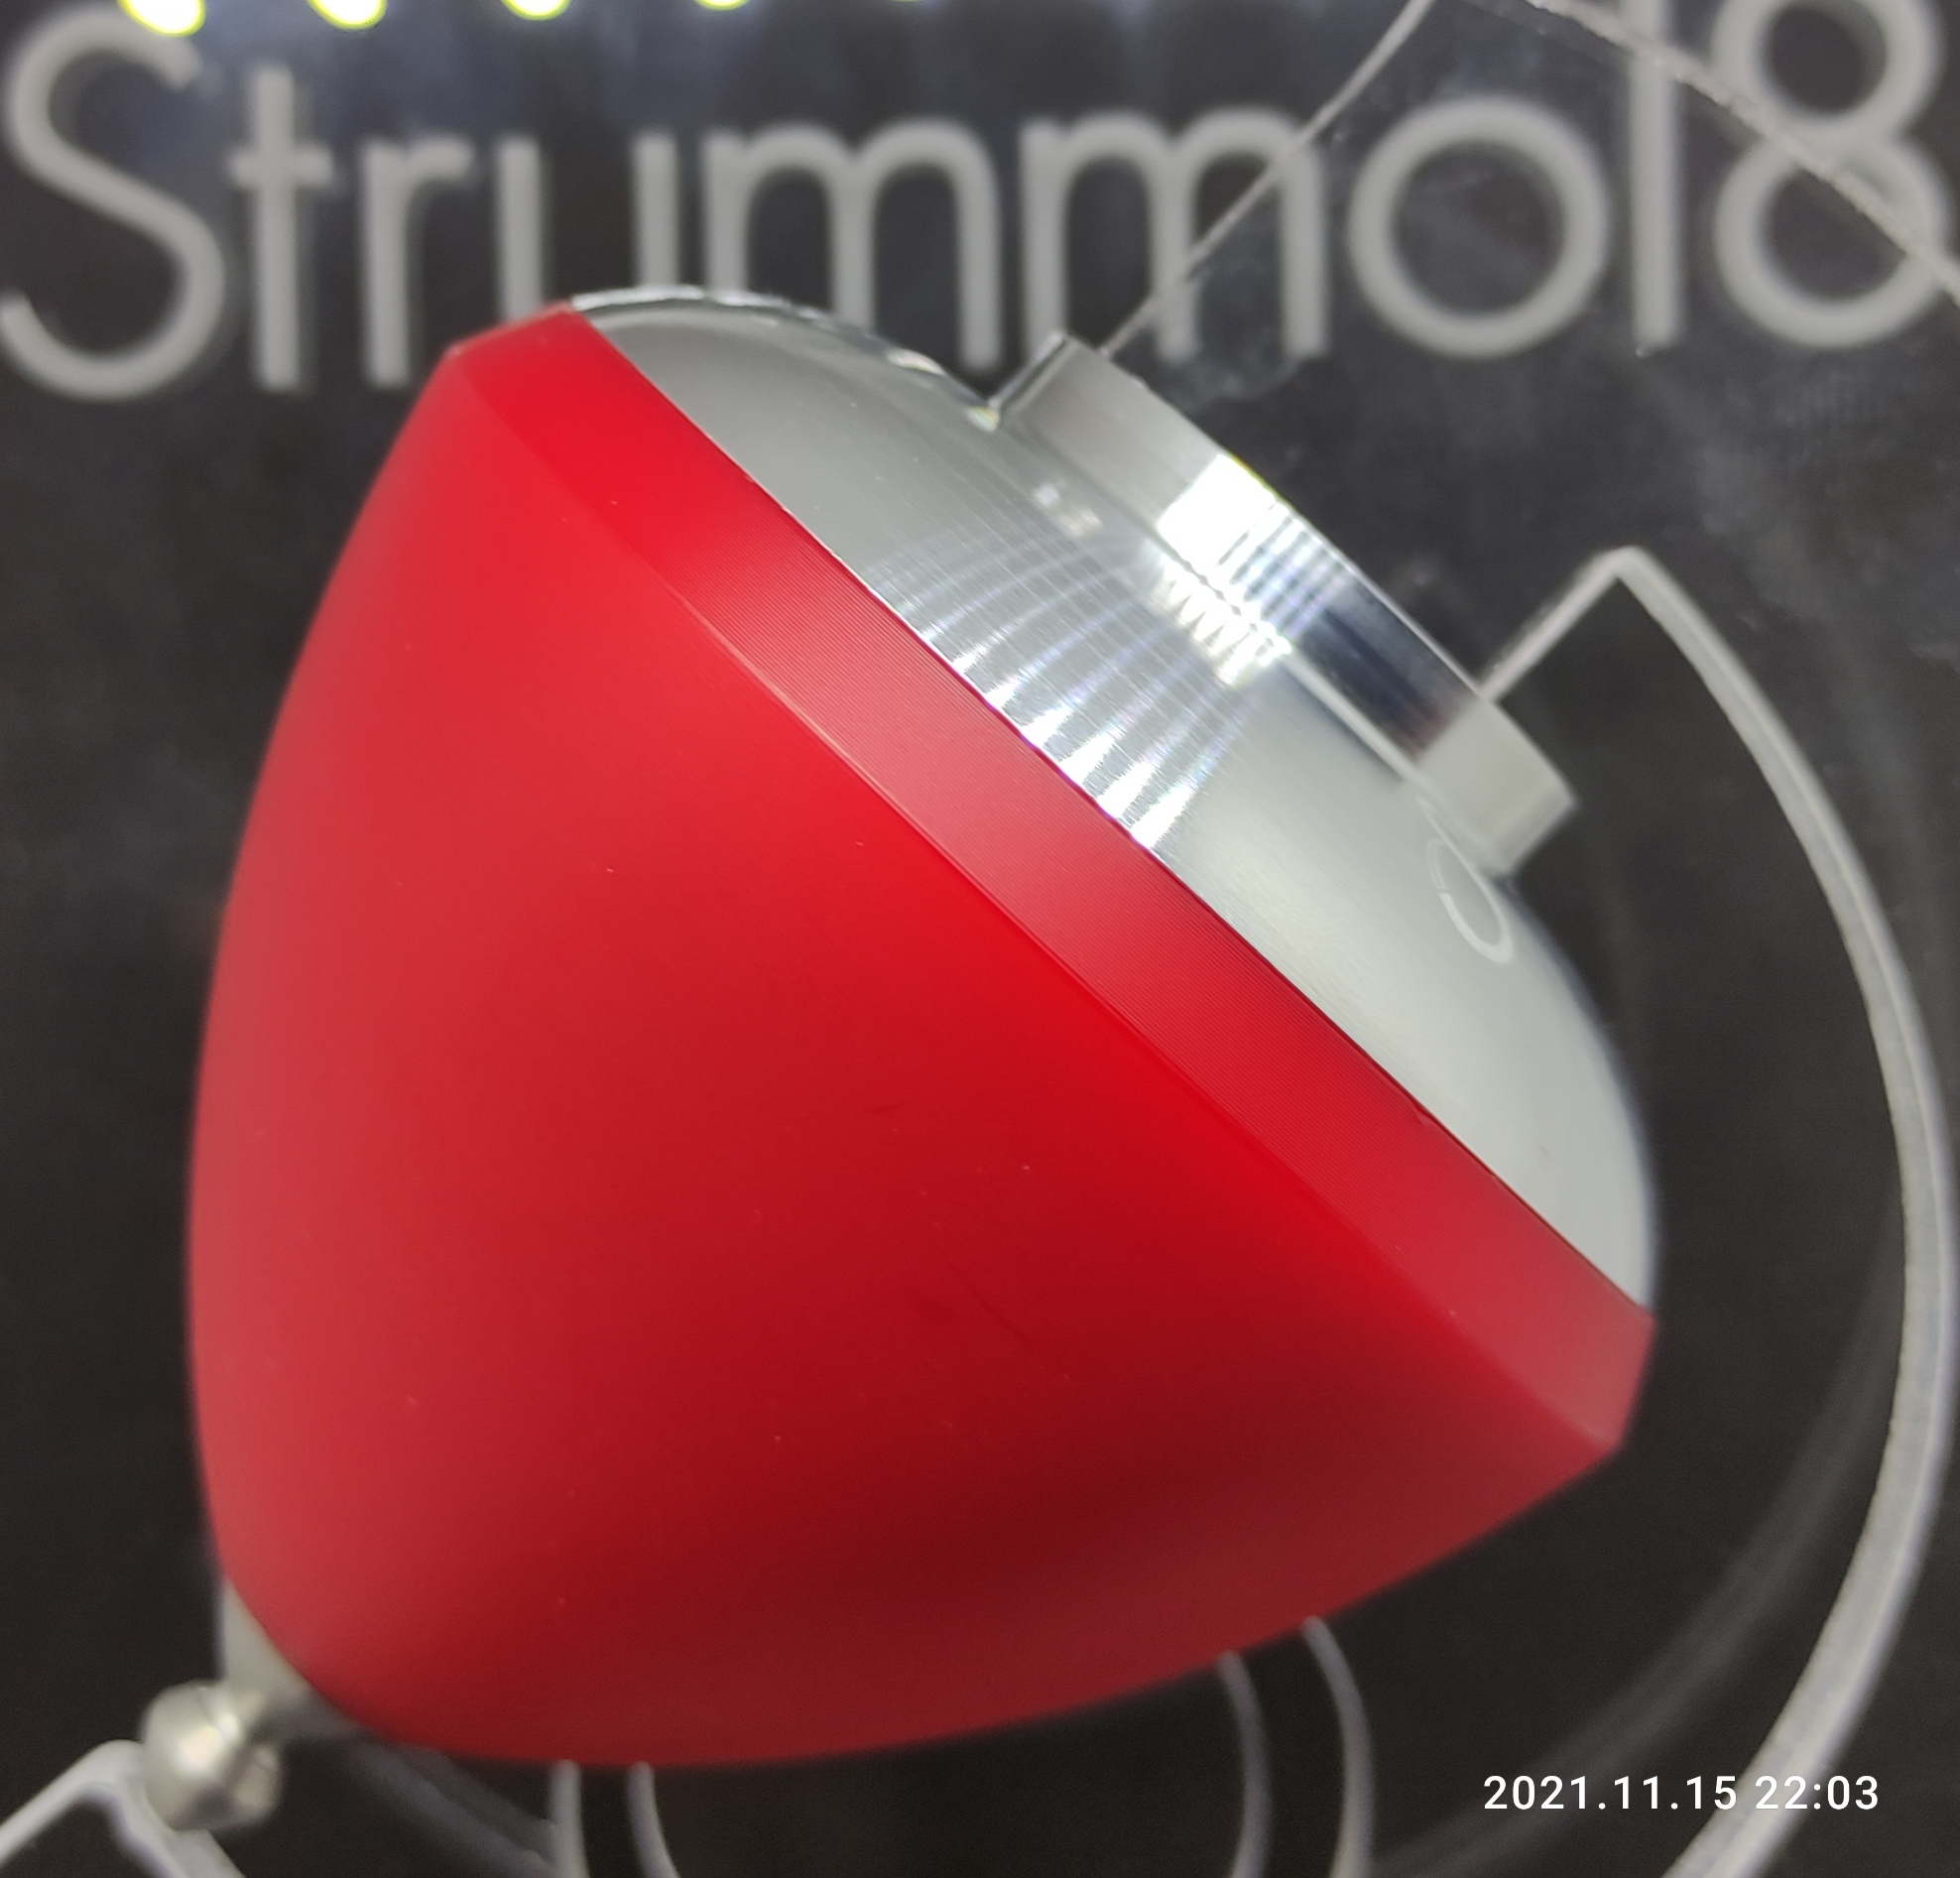 Strummol8